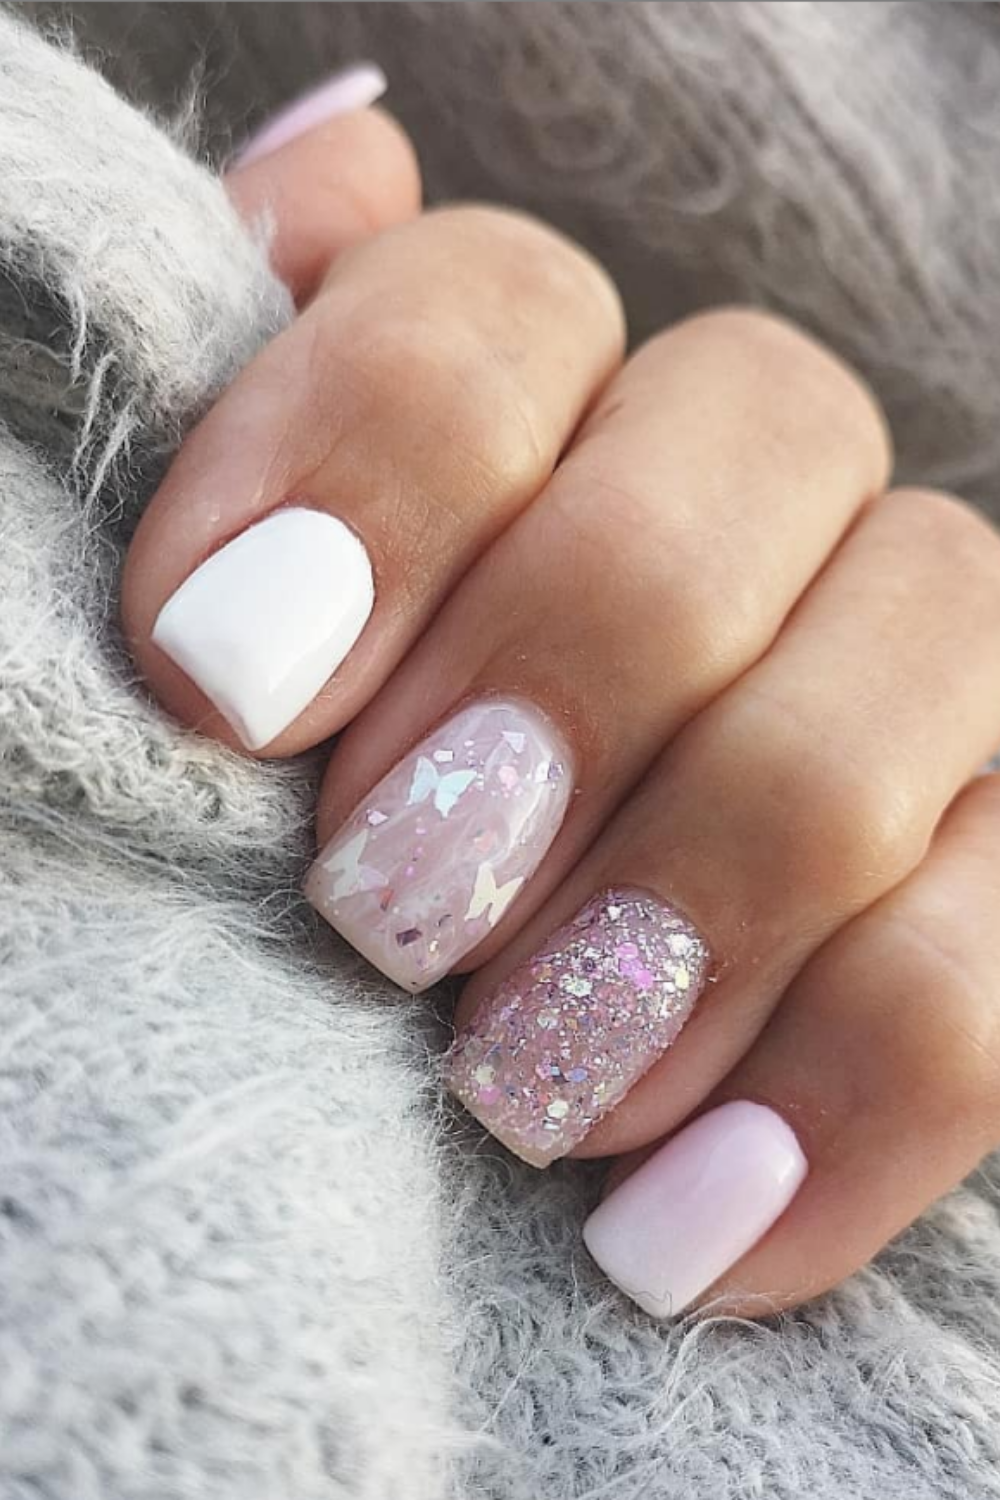 Glitter short nails